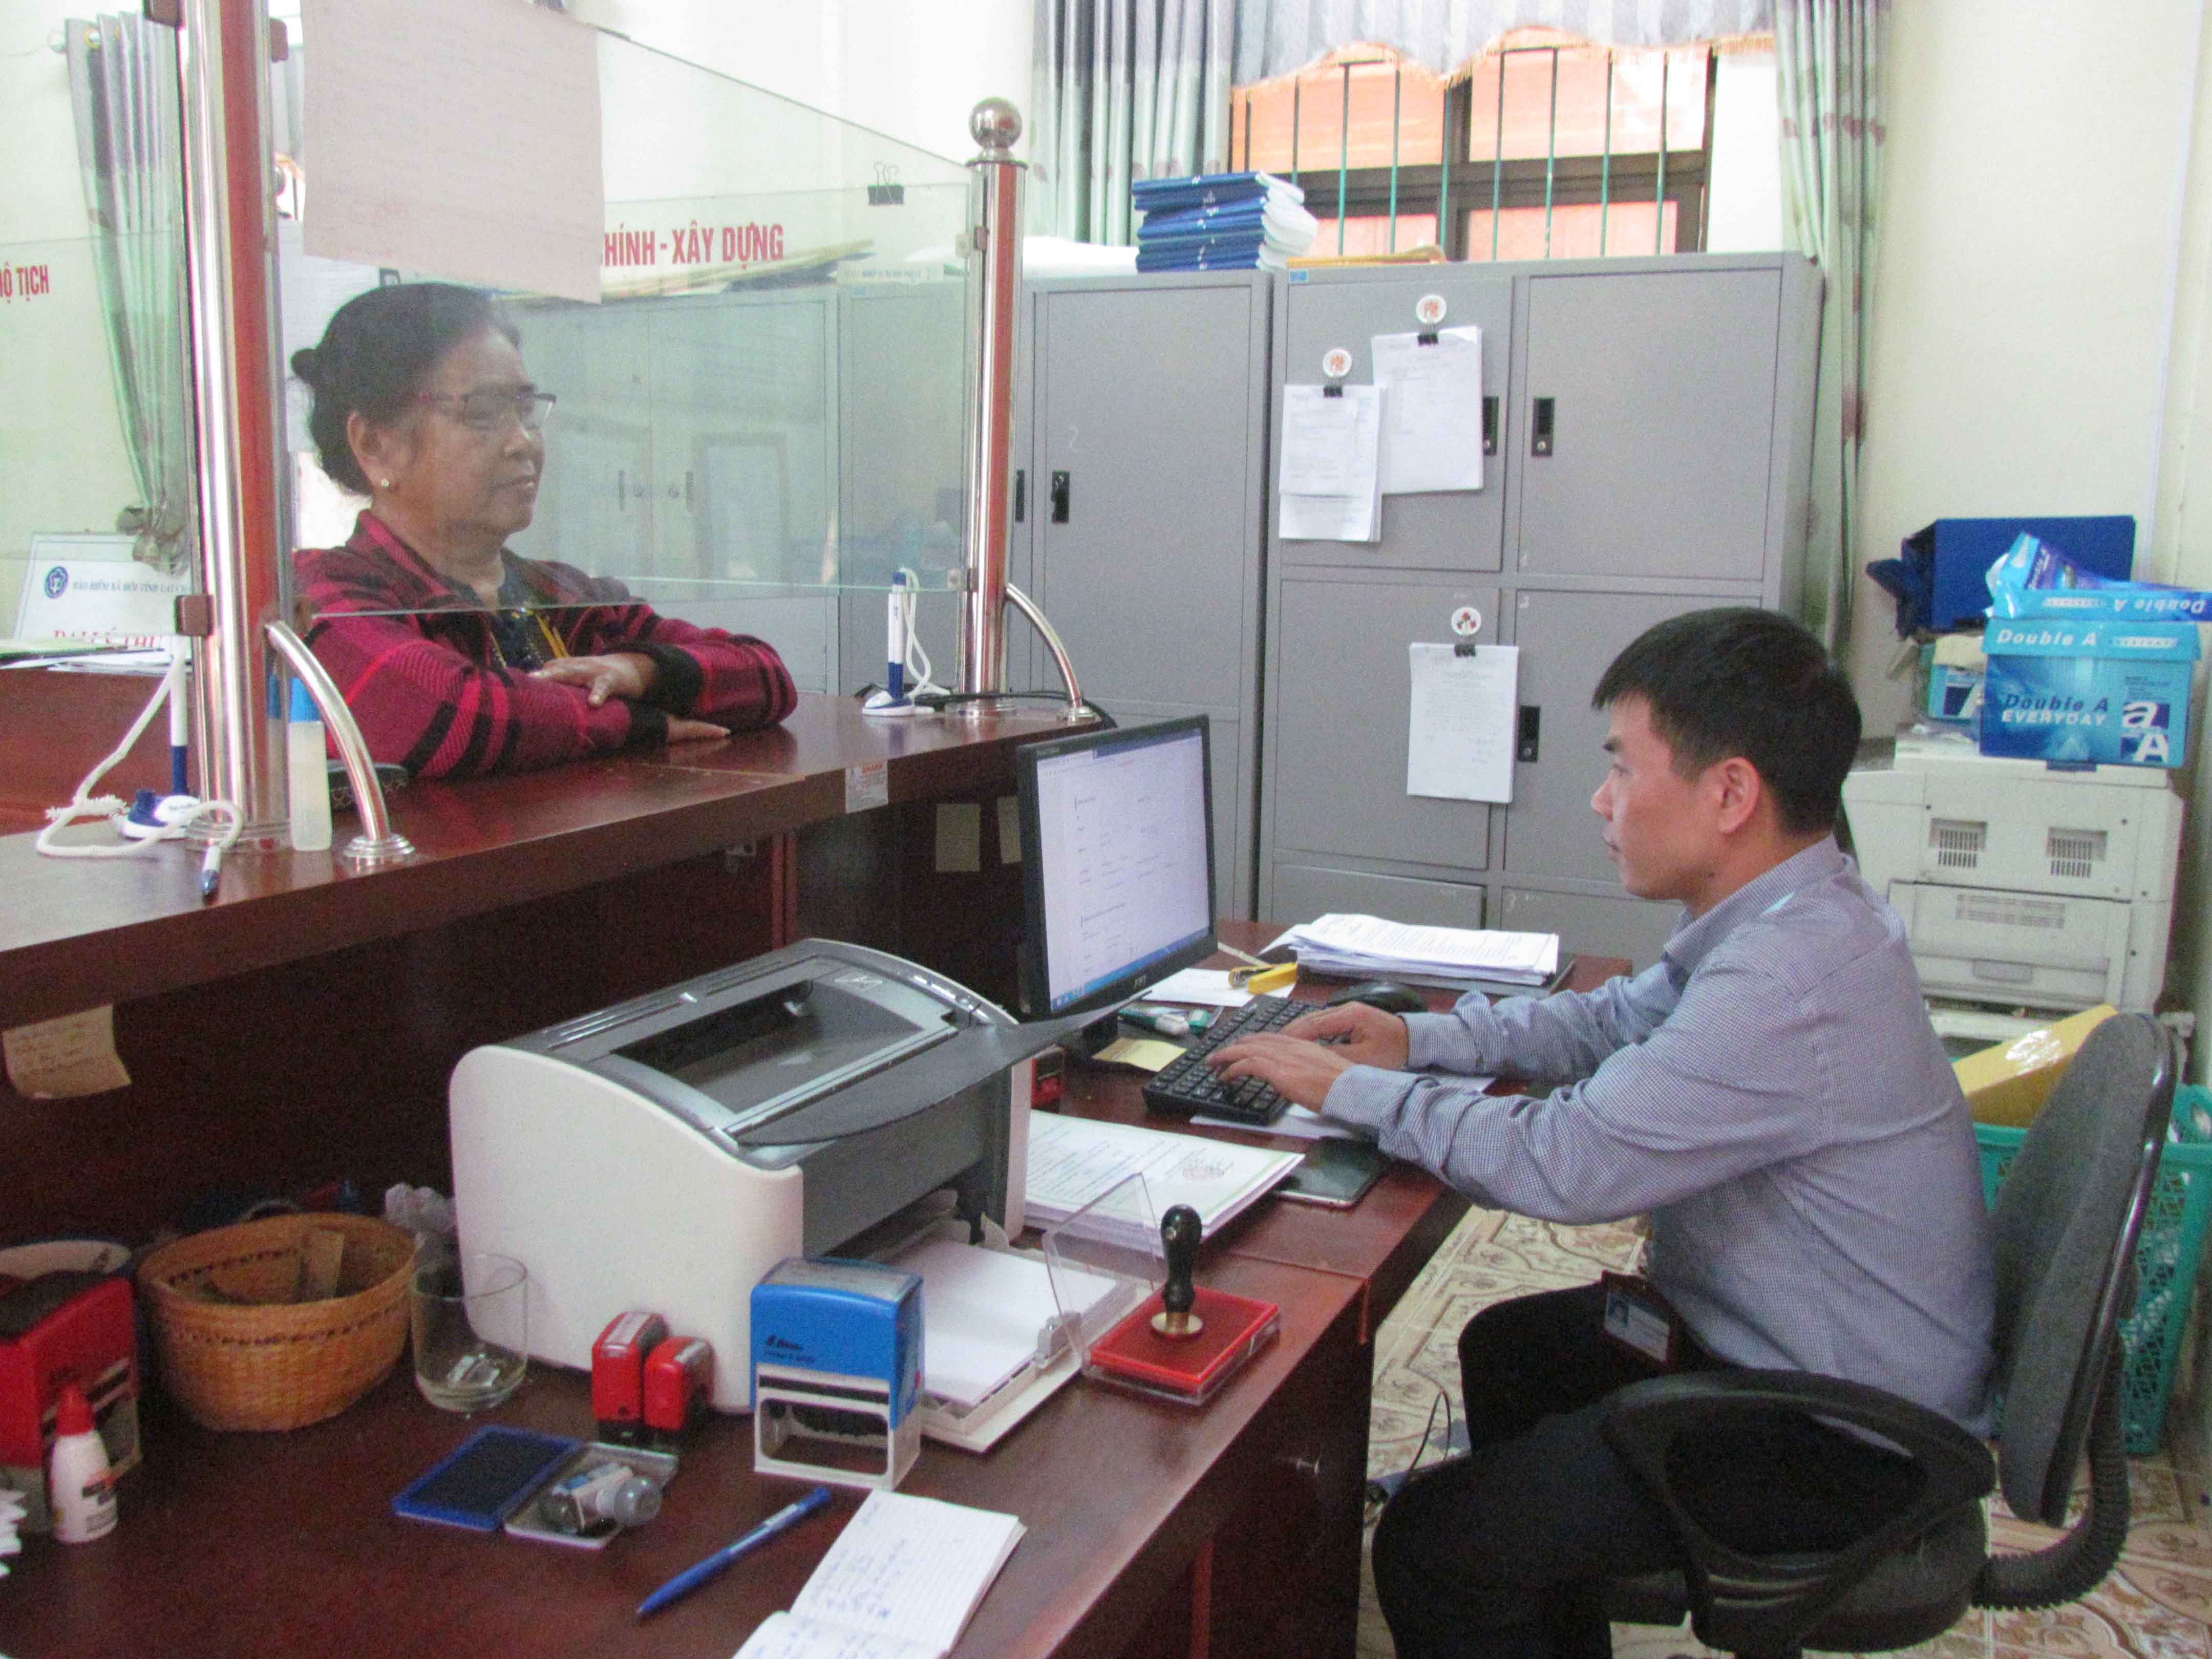 Tiện ích của phần mềm đăng ký khai sinh điện tử và hệ thống thông tin đăng ký, quản lý hộ tịch giúp công chức tư pháp hộ tịch phường Đoàn Kết (thành phố Lai Châu) giải quyết công việc nhanh, chính xác.